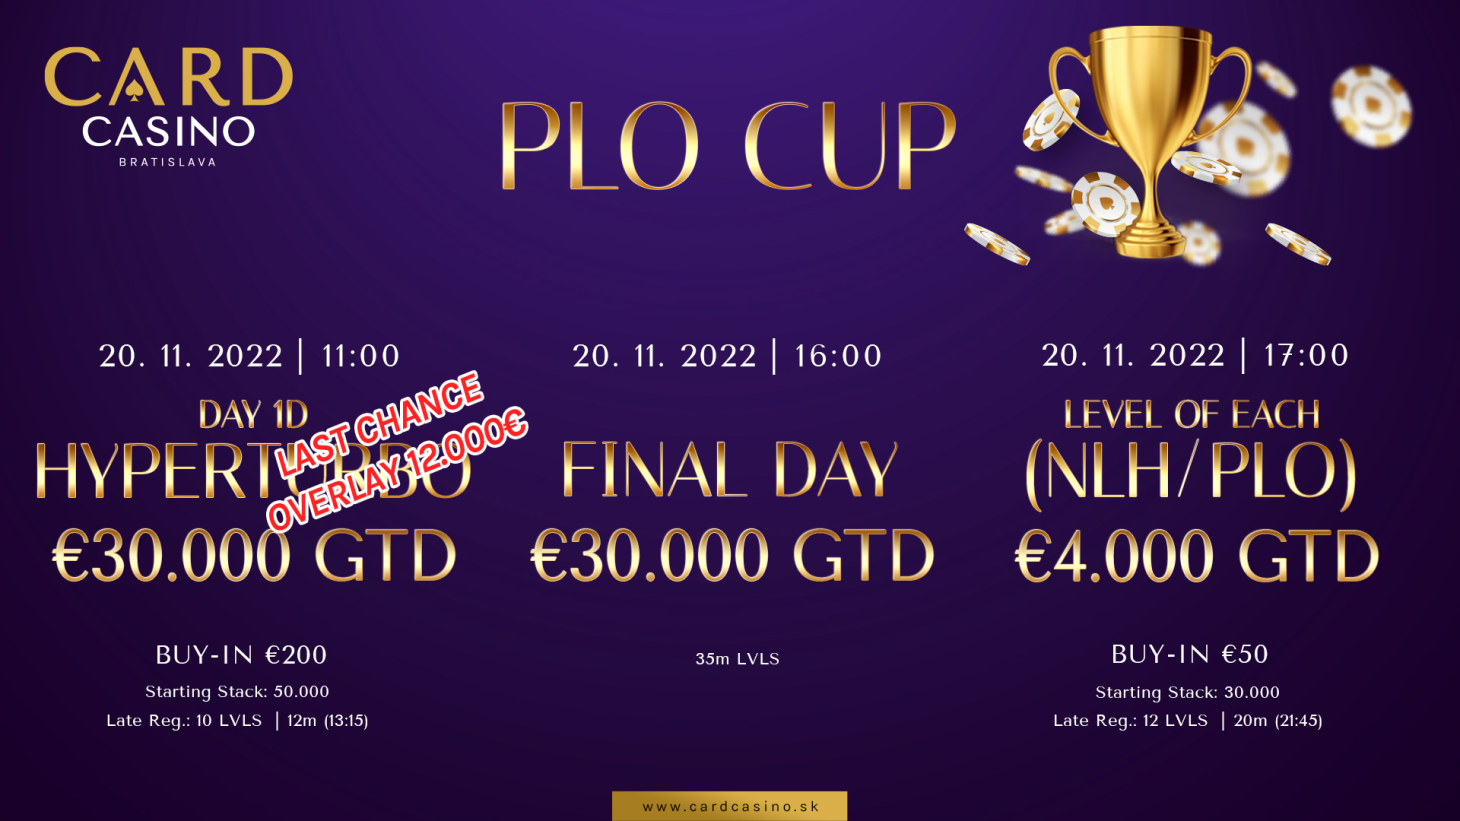 90 entries v PLO Cup zatial OVERLAY 12.000€, šanca pre každého.